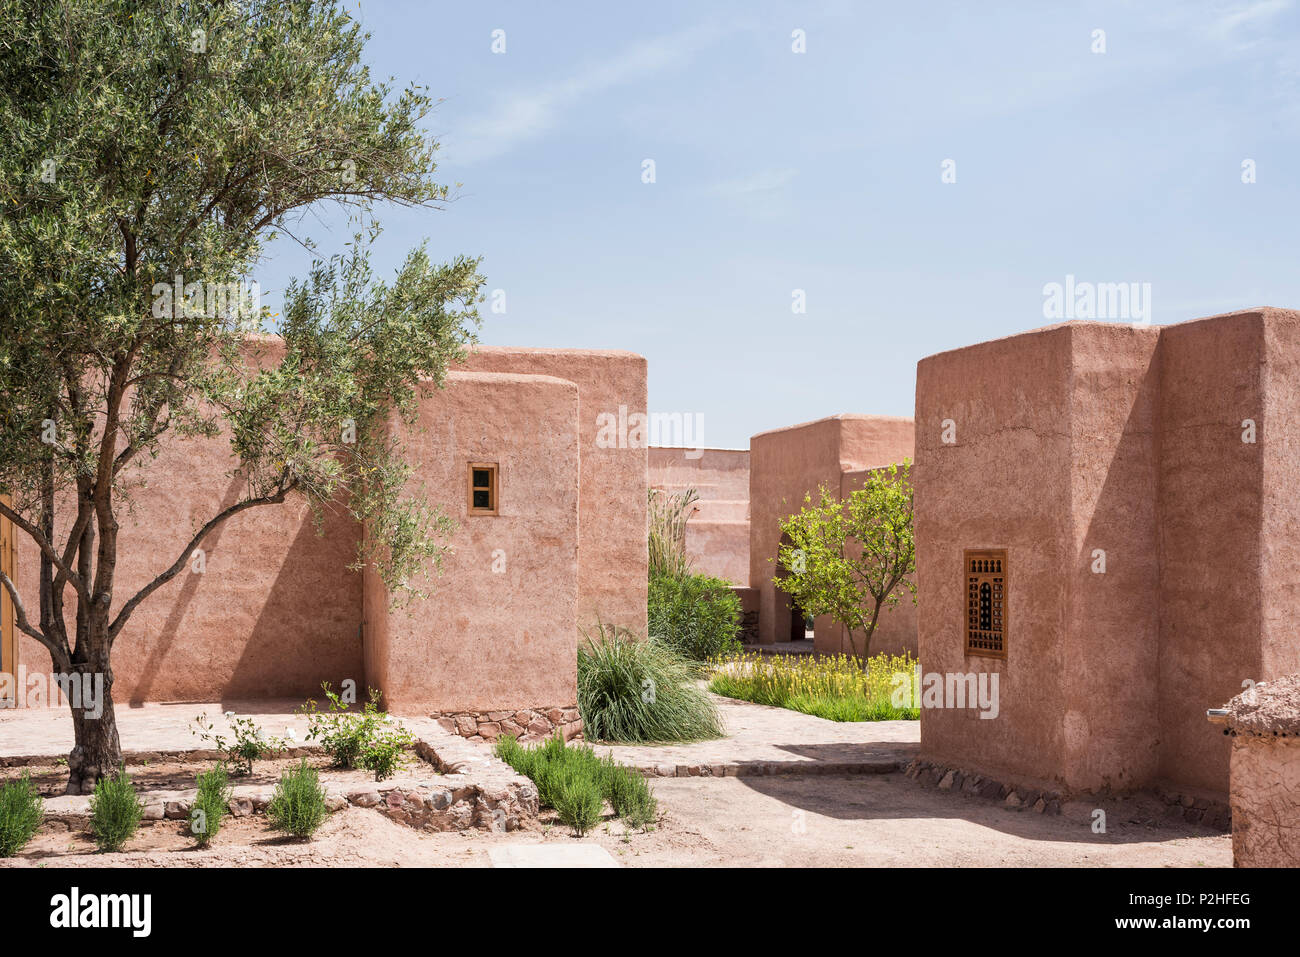 Fachada exterior de adobe de estilo bereber lodges con patio de limoneros, bambú y plantas silvestres marroquí Foto de stock